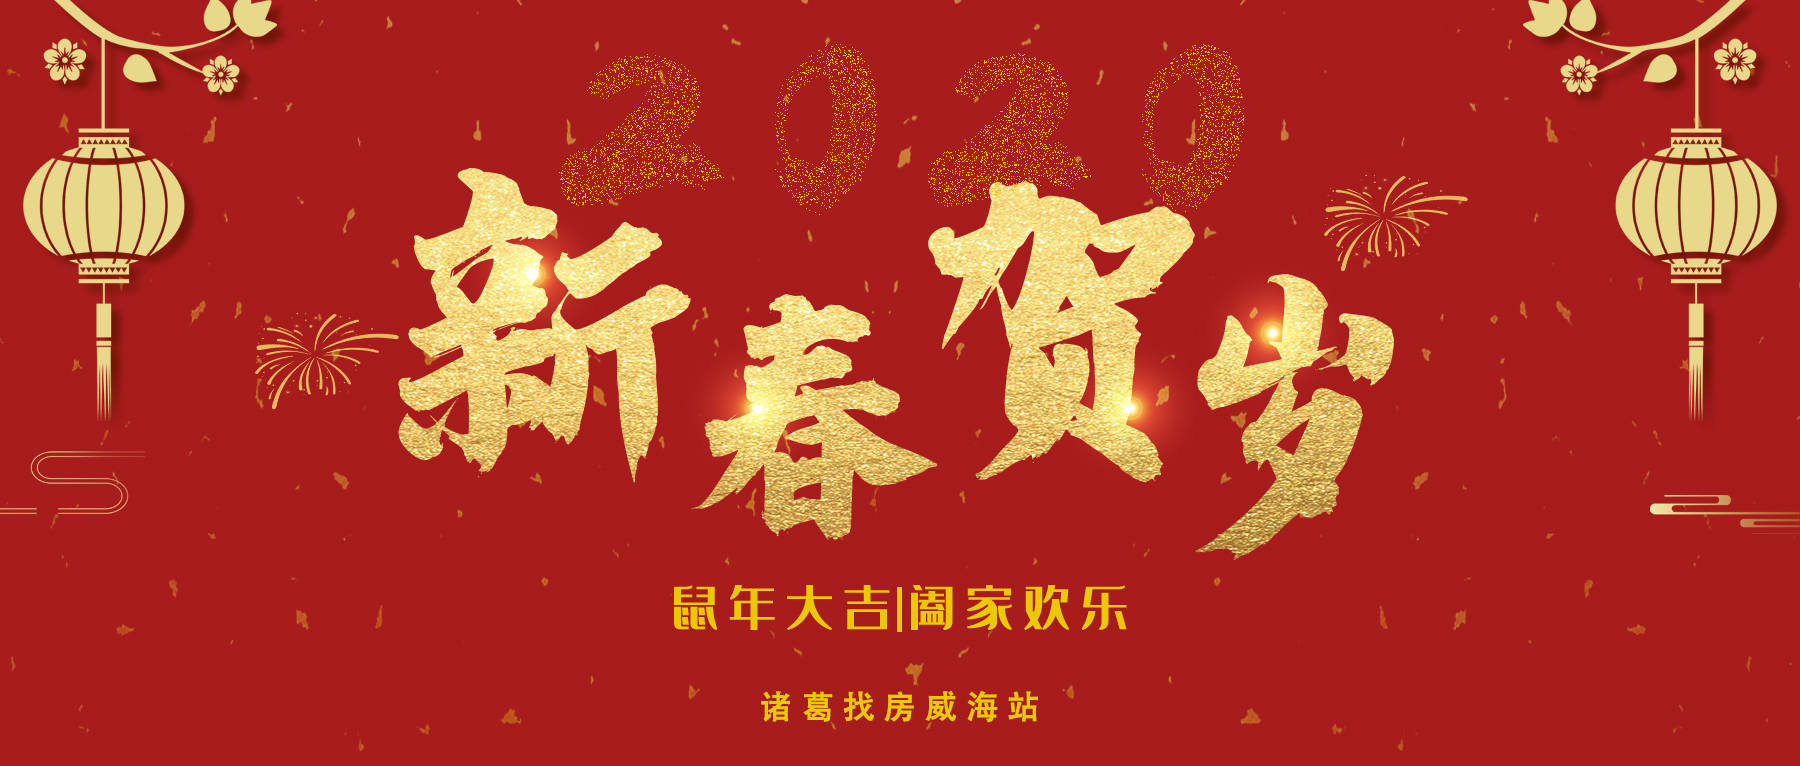 春节封面设计 简单图片